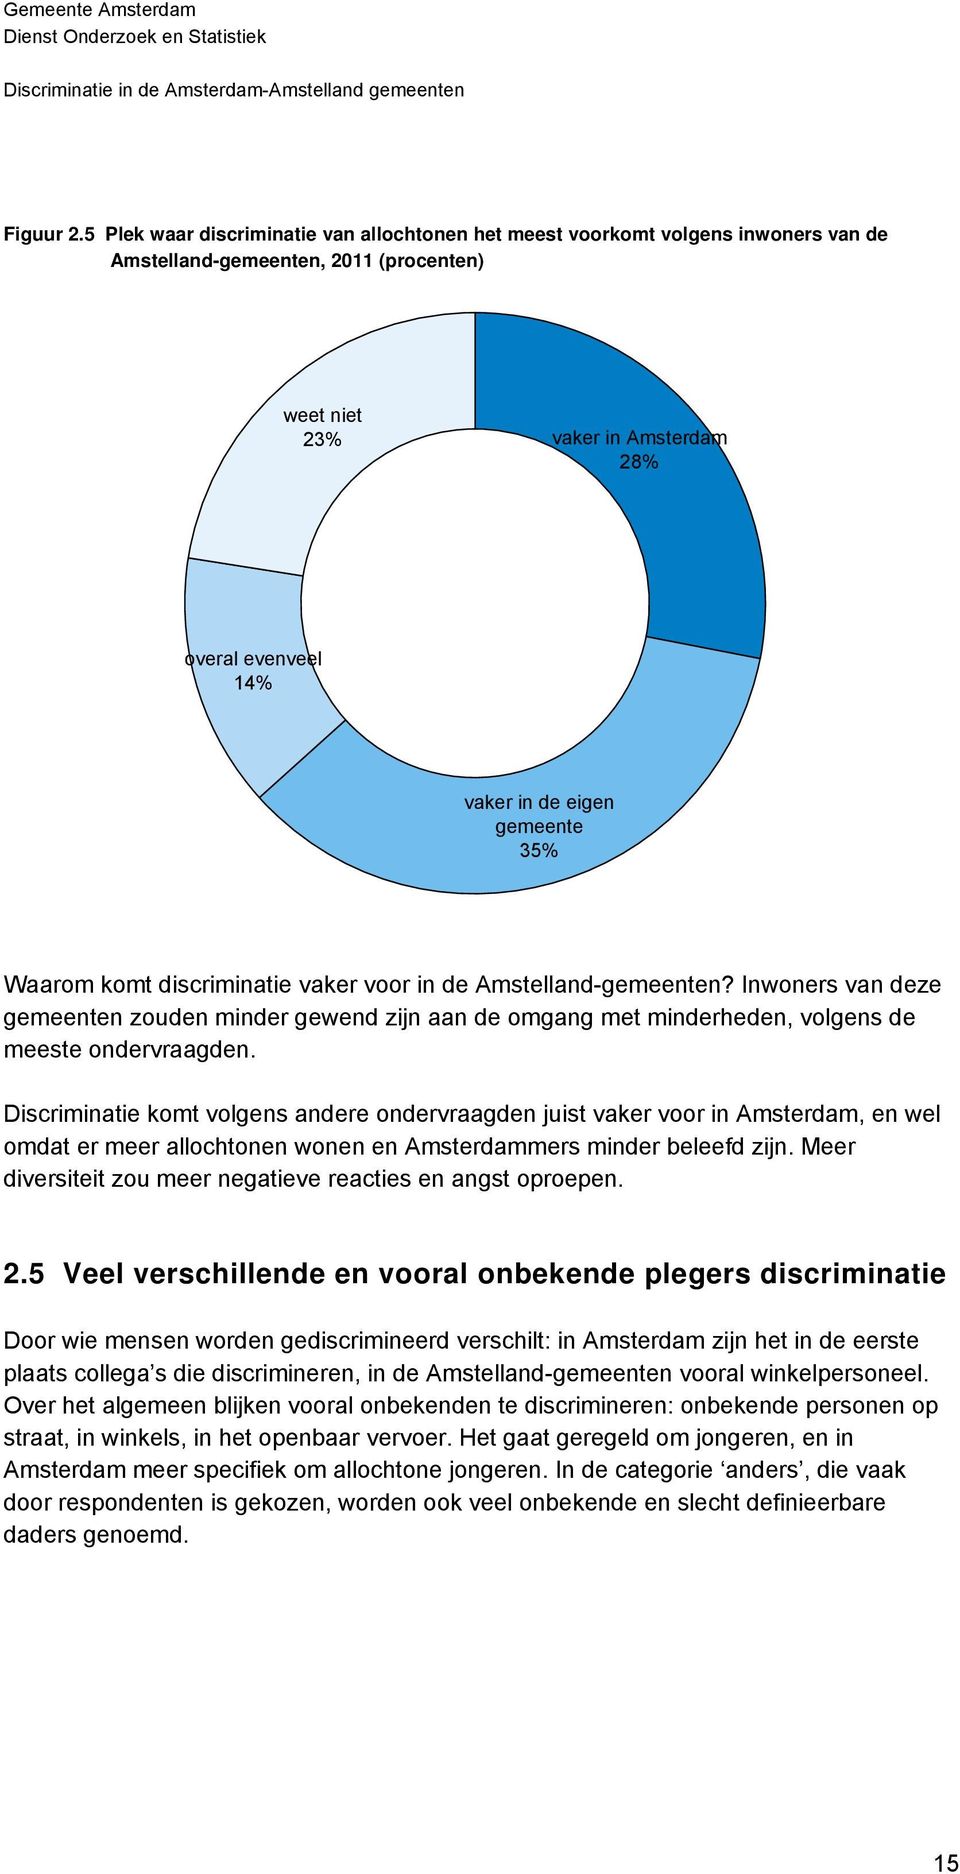 gemeente 35% Waarom komt discriminatie vaker voor in de Amstelland-gemeenten? Inwoners van deze gemeenten zouden minder gewend zijn aan de omgang met minderheden, volgens de meeste ondervraagden.